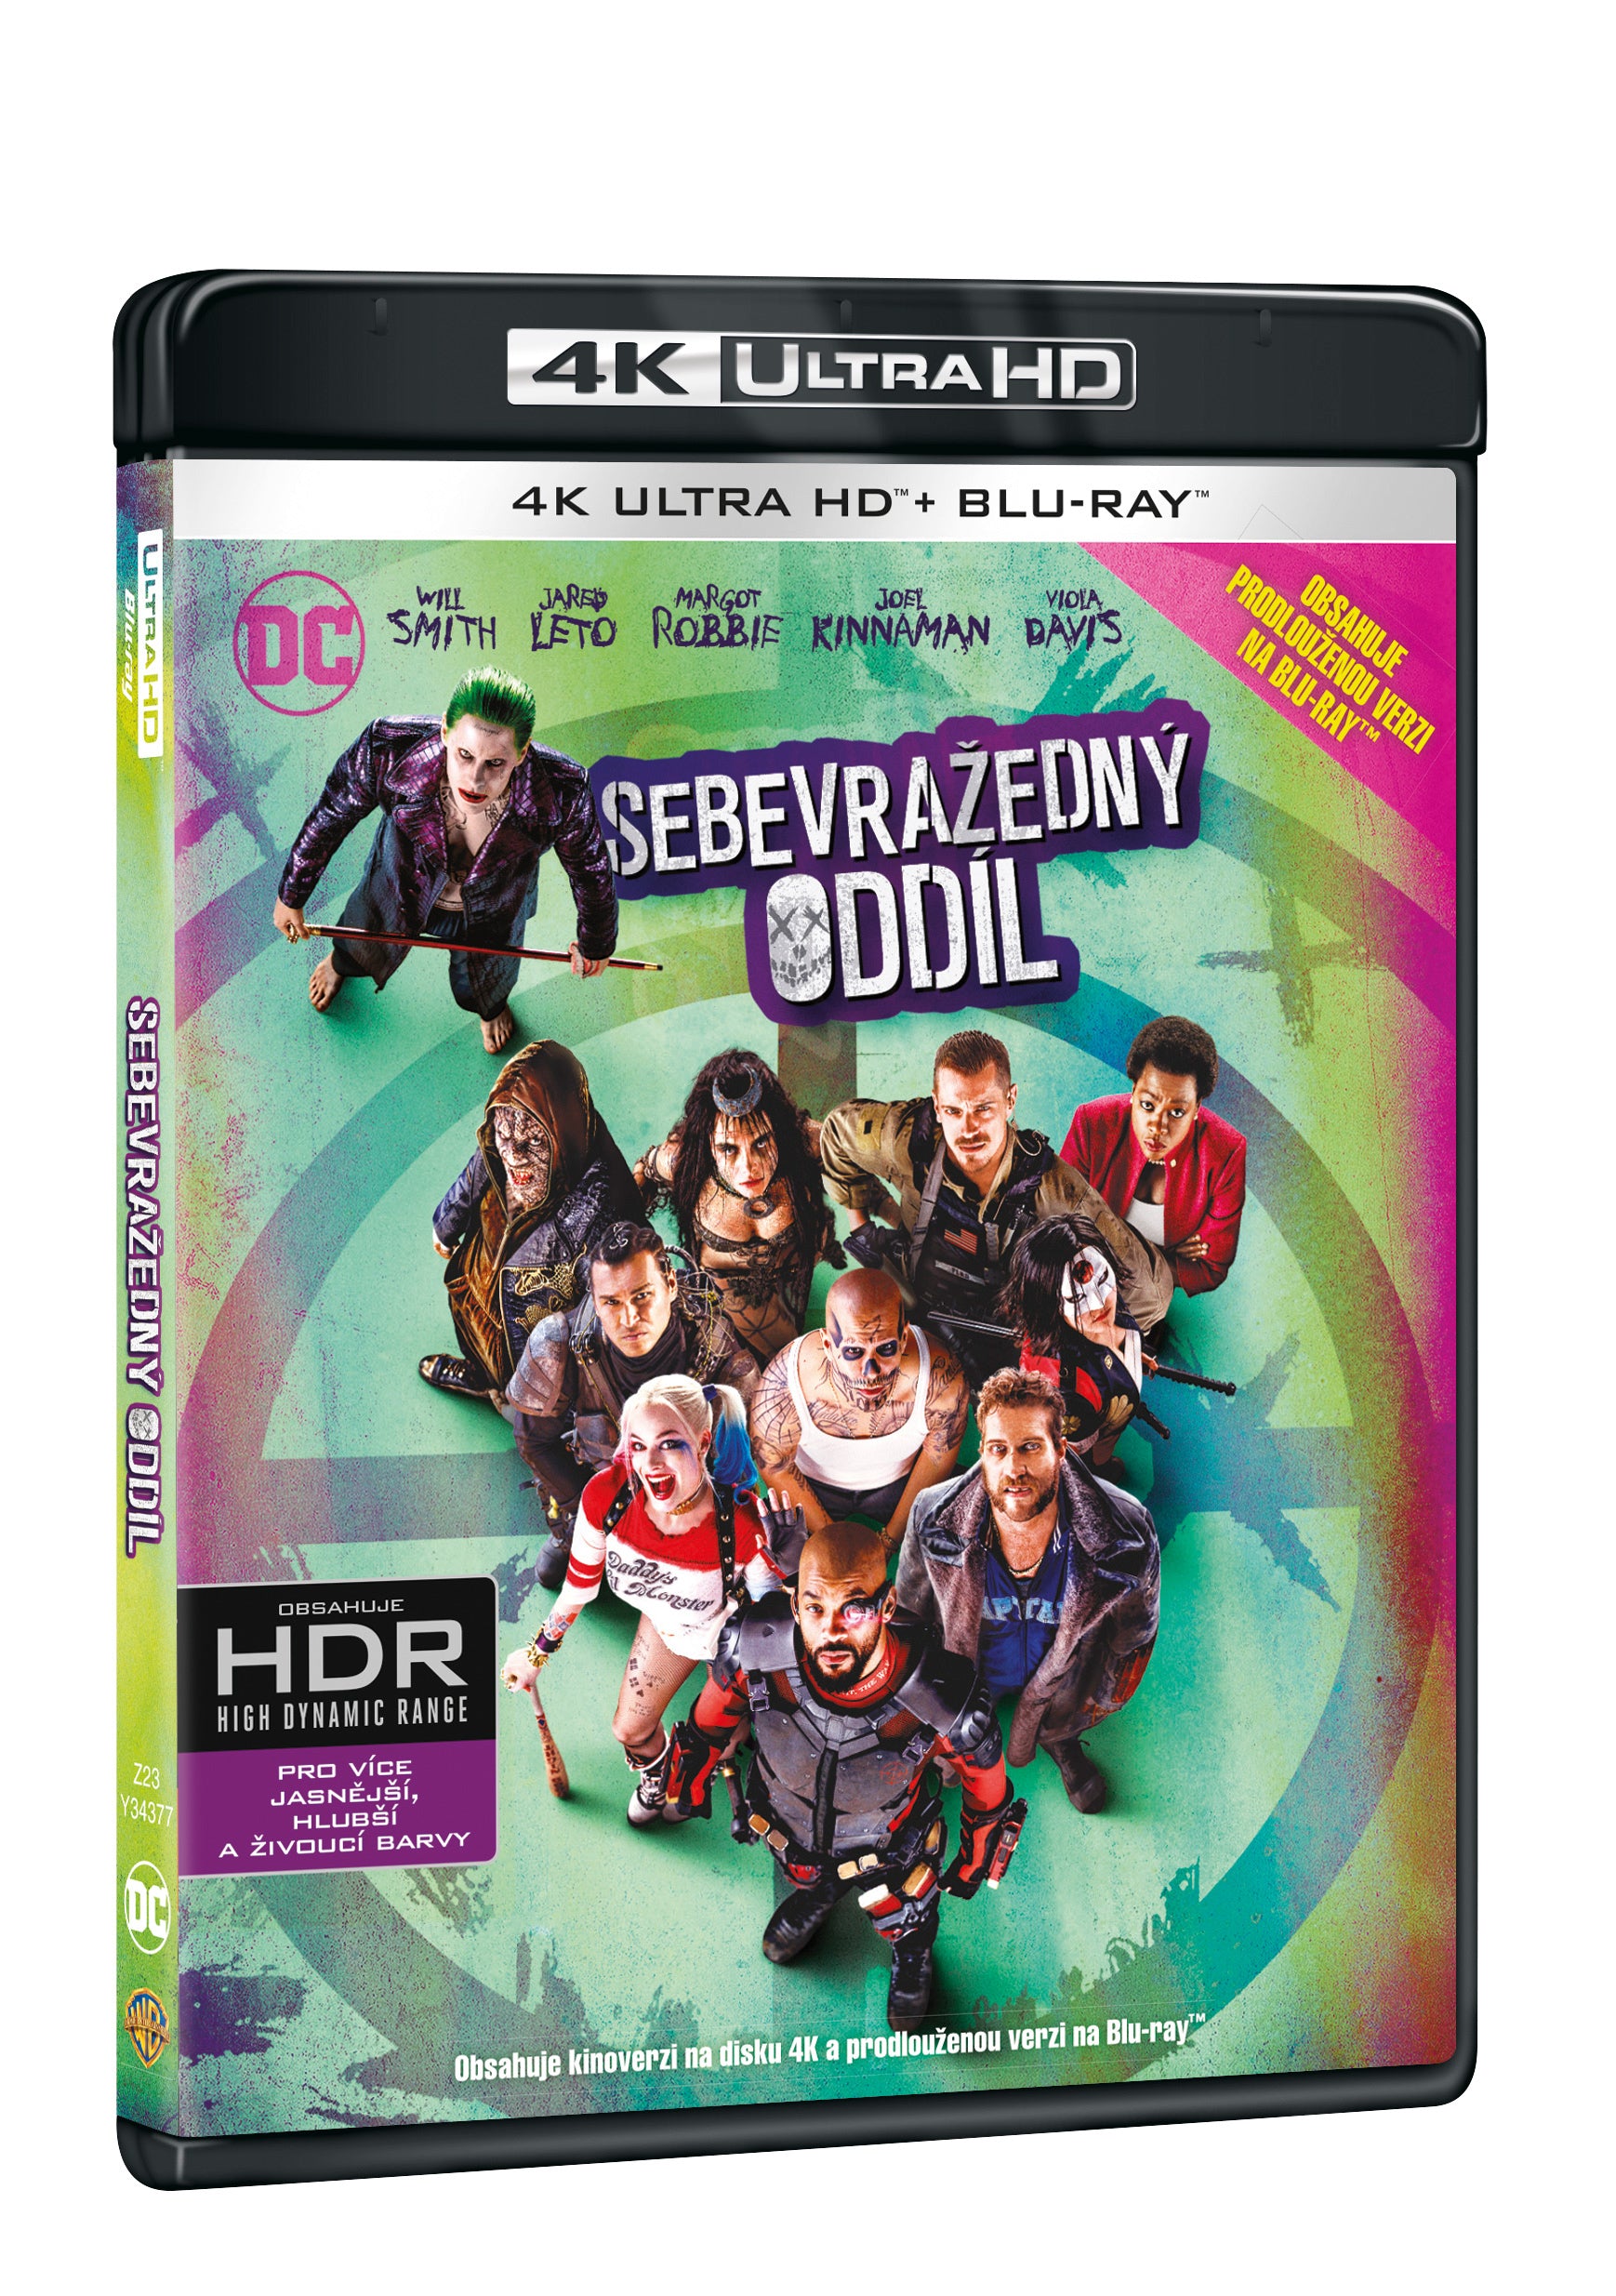 Sebevrazedny oddil 2BD (UHD+BD) / Suicide Squad - Czech version